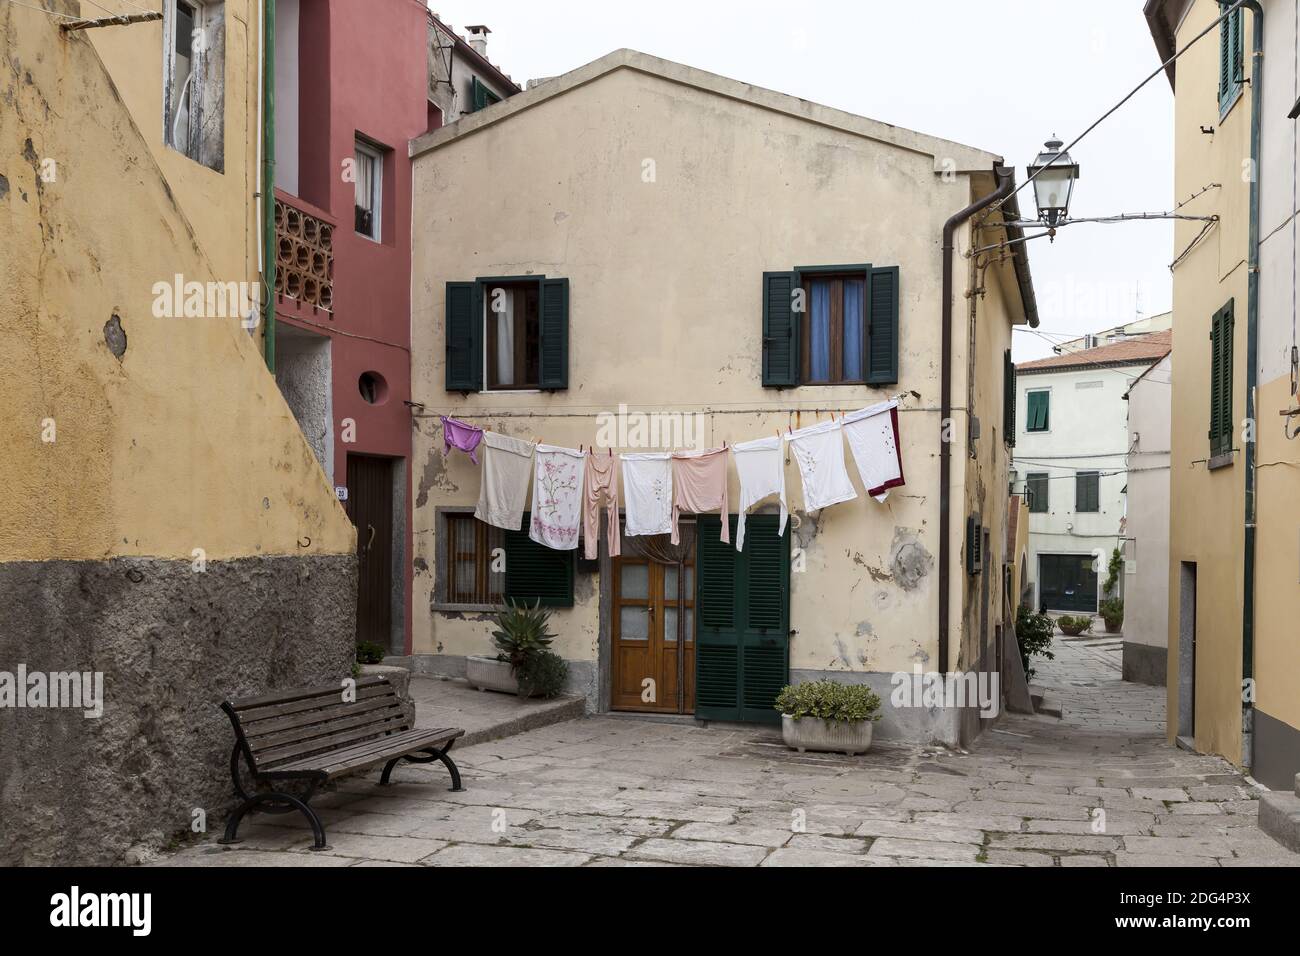 San Piero, old town lane, Elba, Tuscany, Italy Stock Photo